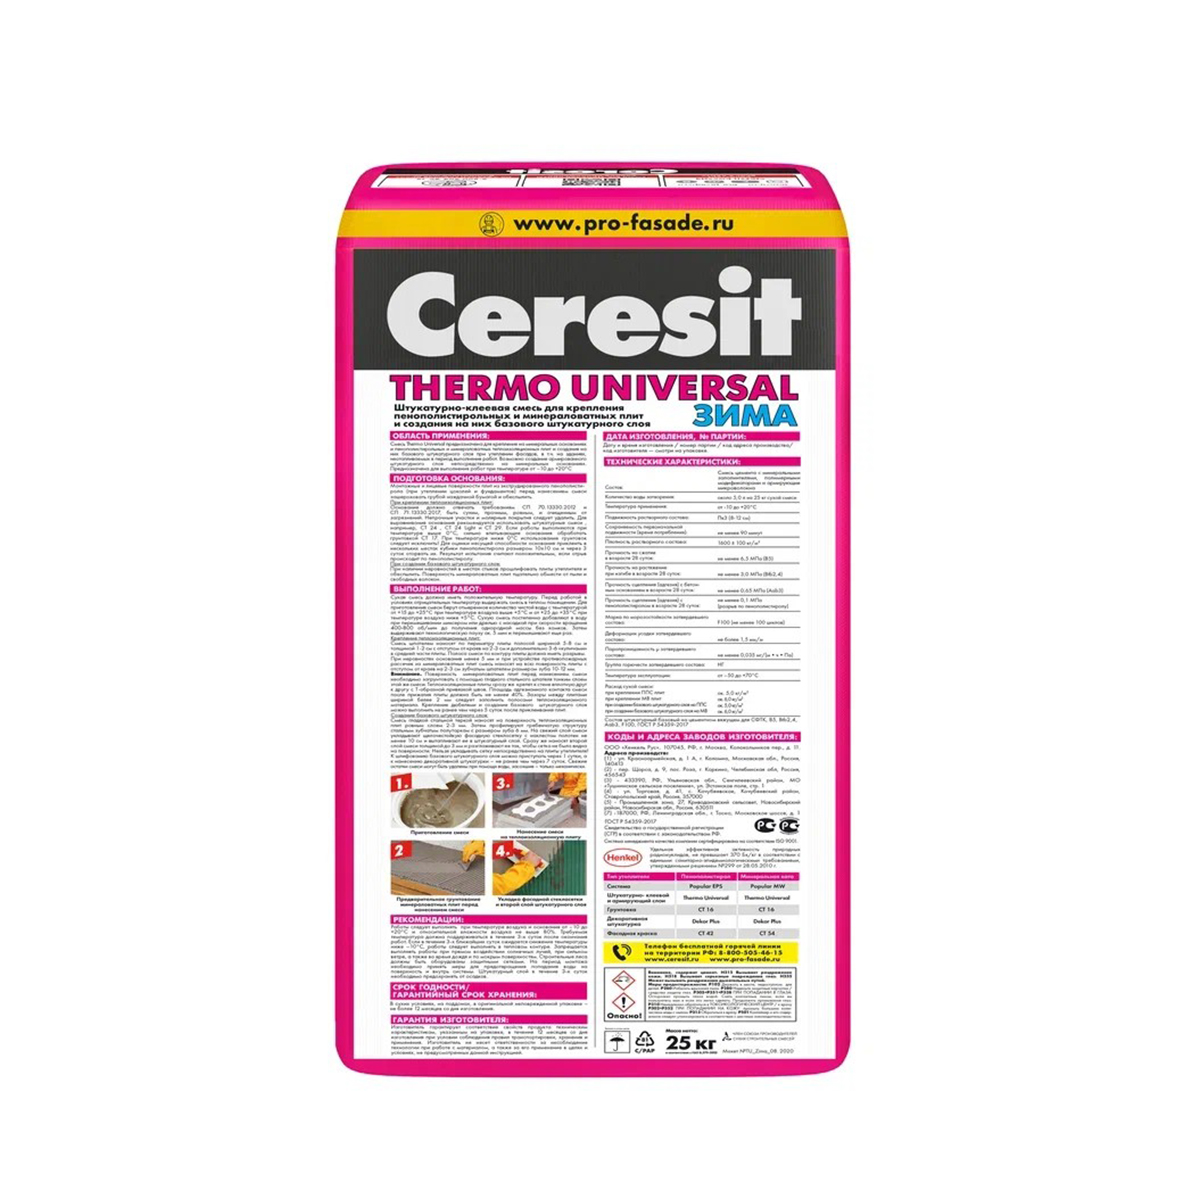 Клей для плит из пенополистирола и минер. ваты thermo universal 25 кг зима (1/48) "ceresit"